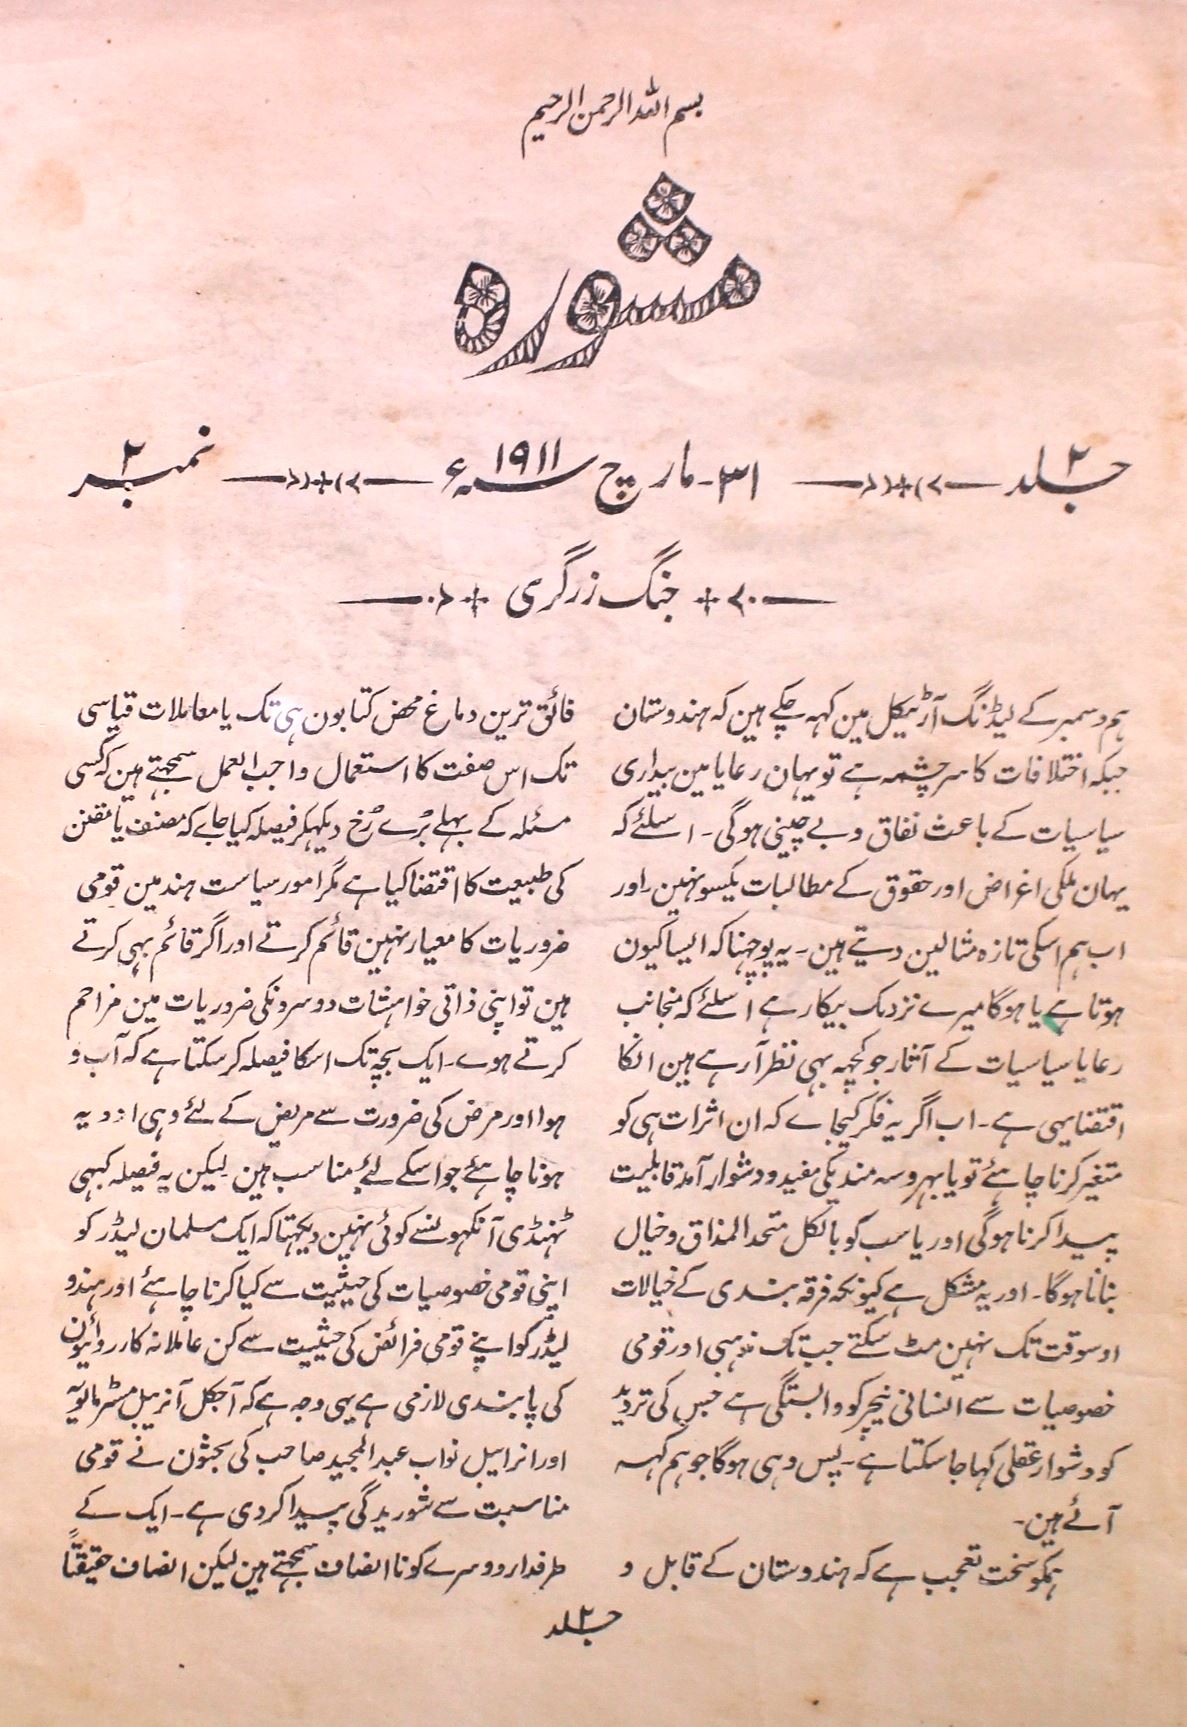 Mashwara Jild 2 No 2 .31 March 1911-SVK